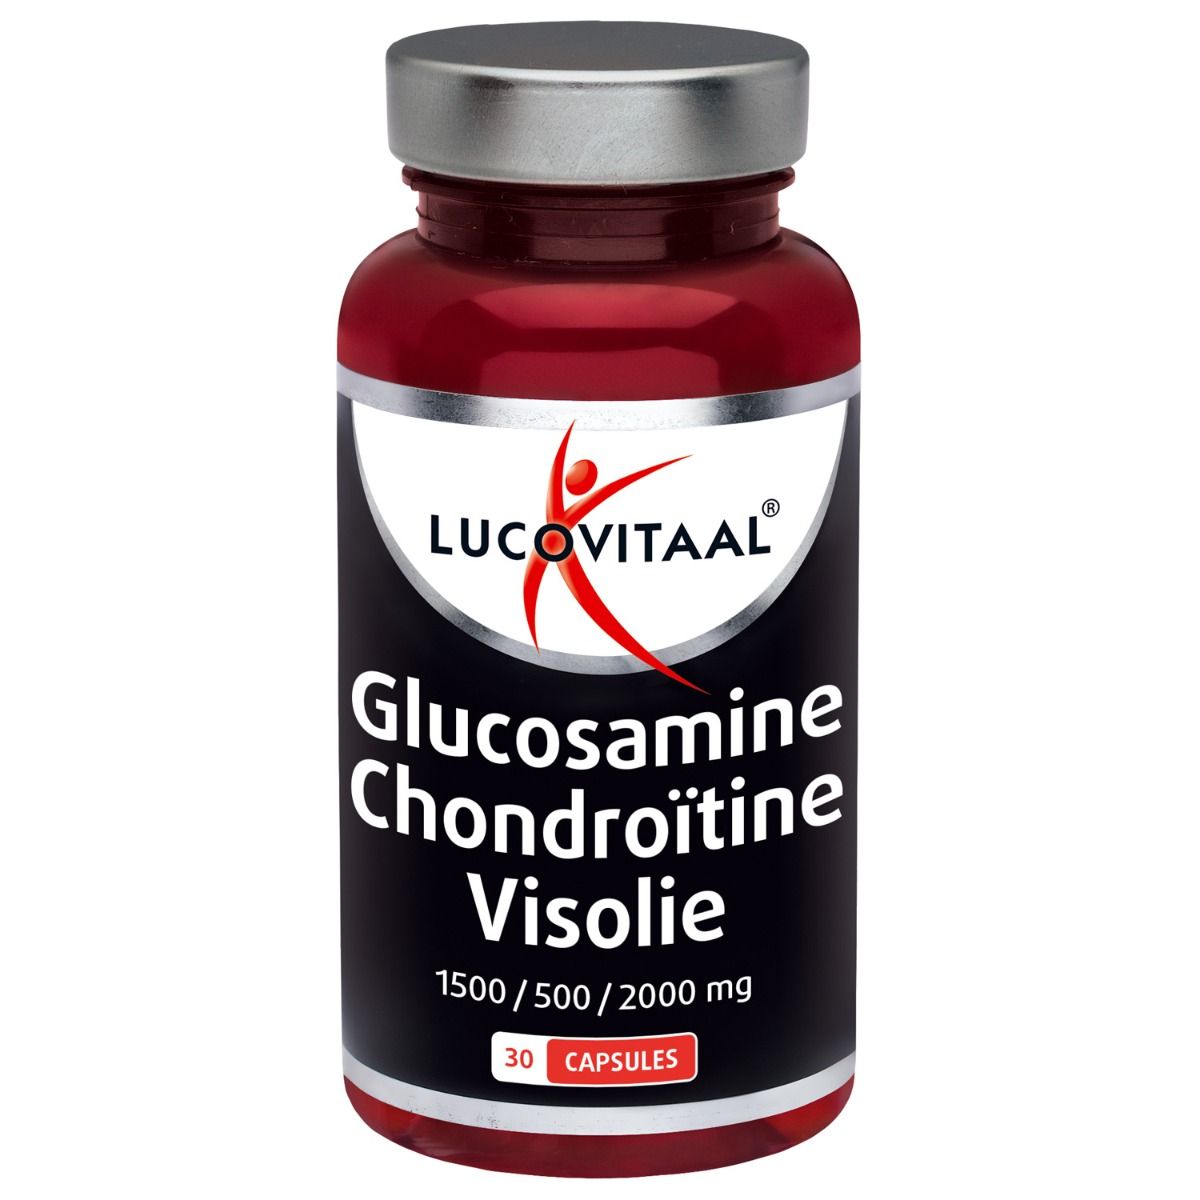 Afdeling vermijden accumuleren Glucosamine Chondroïtine Visolie - Lucovitaal: Krachtig & Goedkoop!